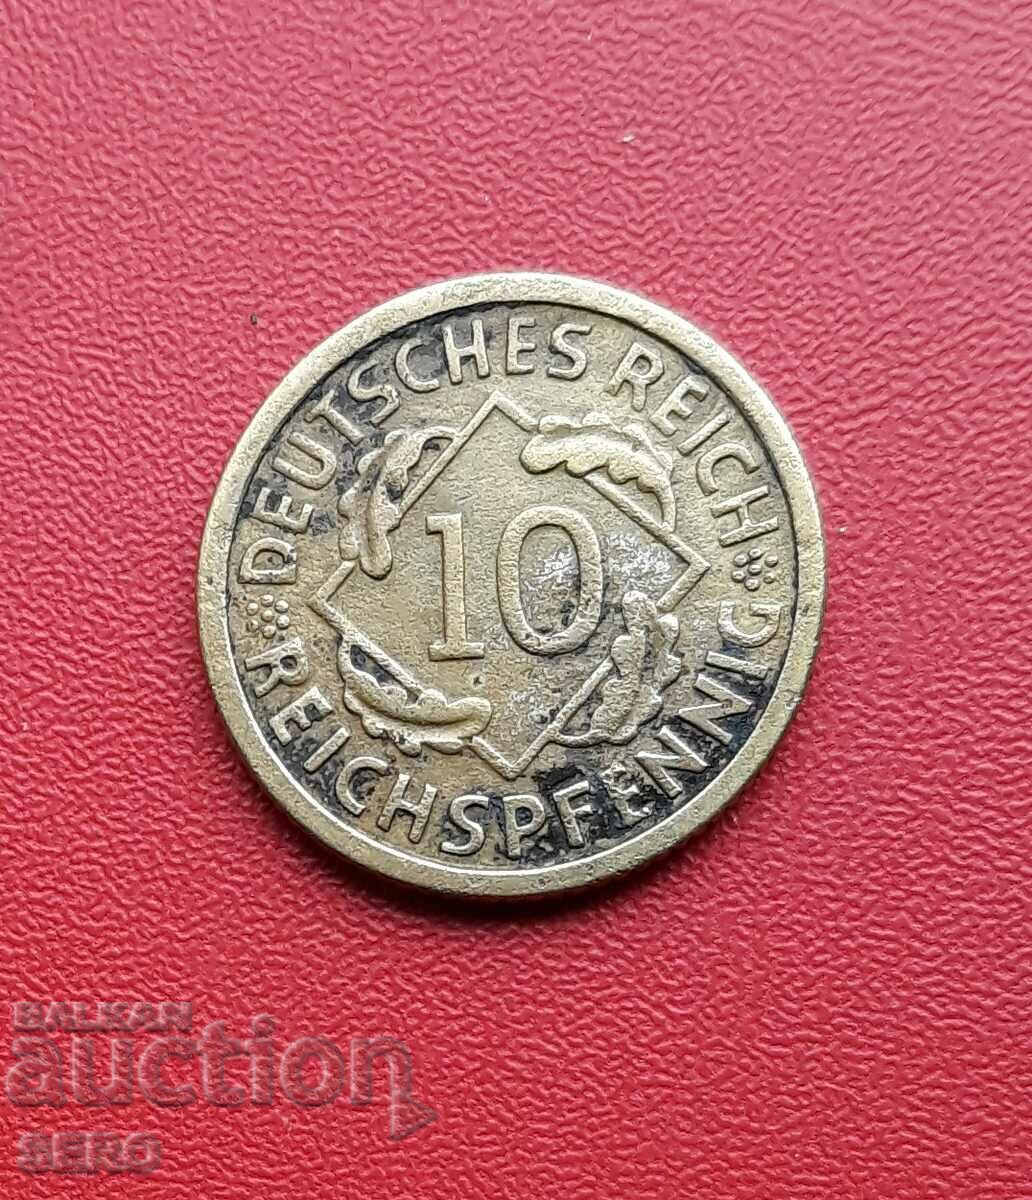 Γερμανία-10 Pfennig 1930 G-Karlsruhe